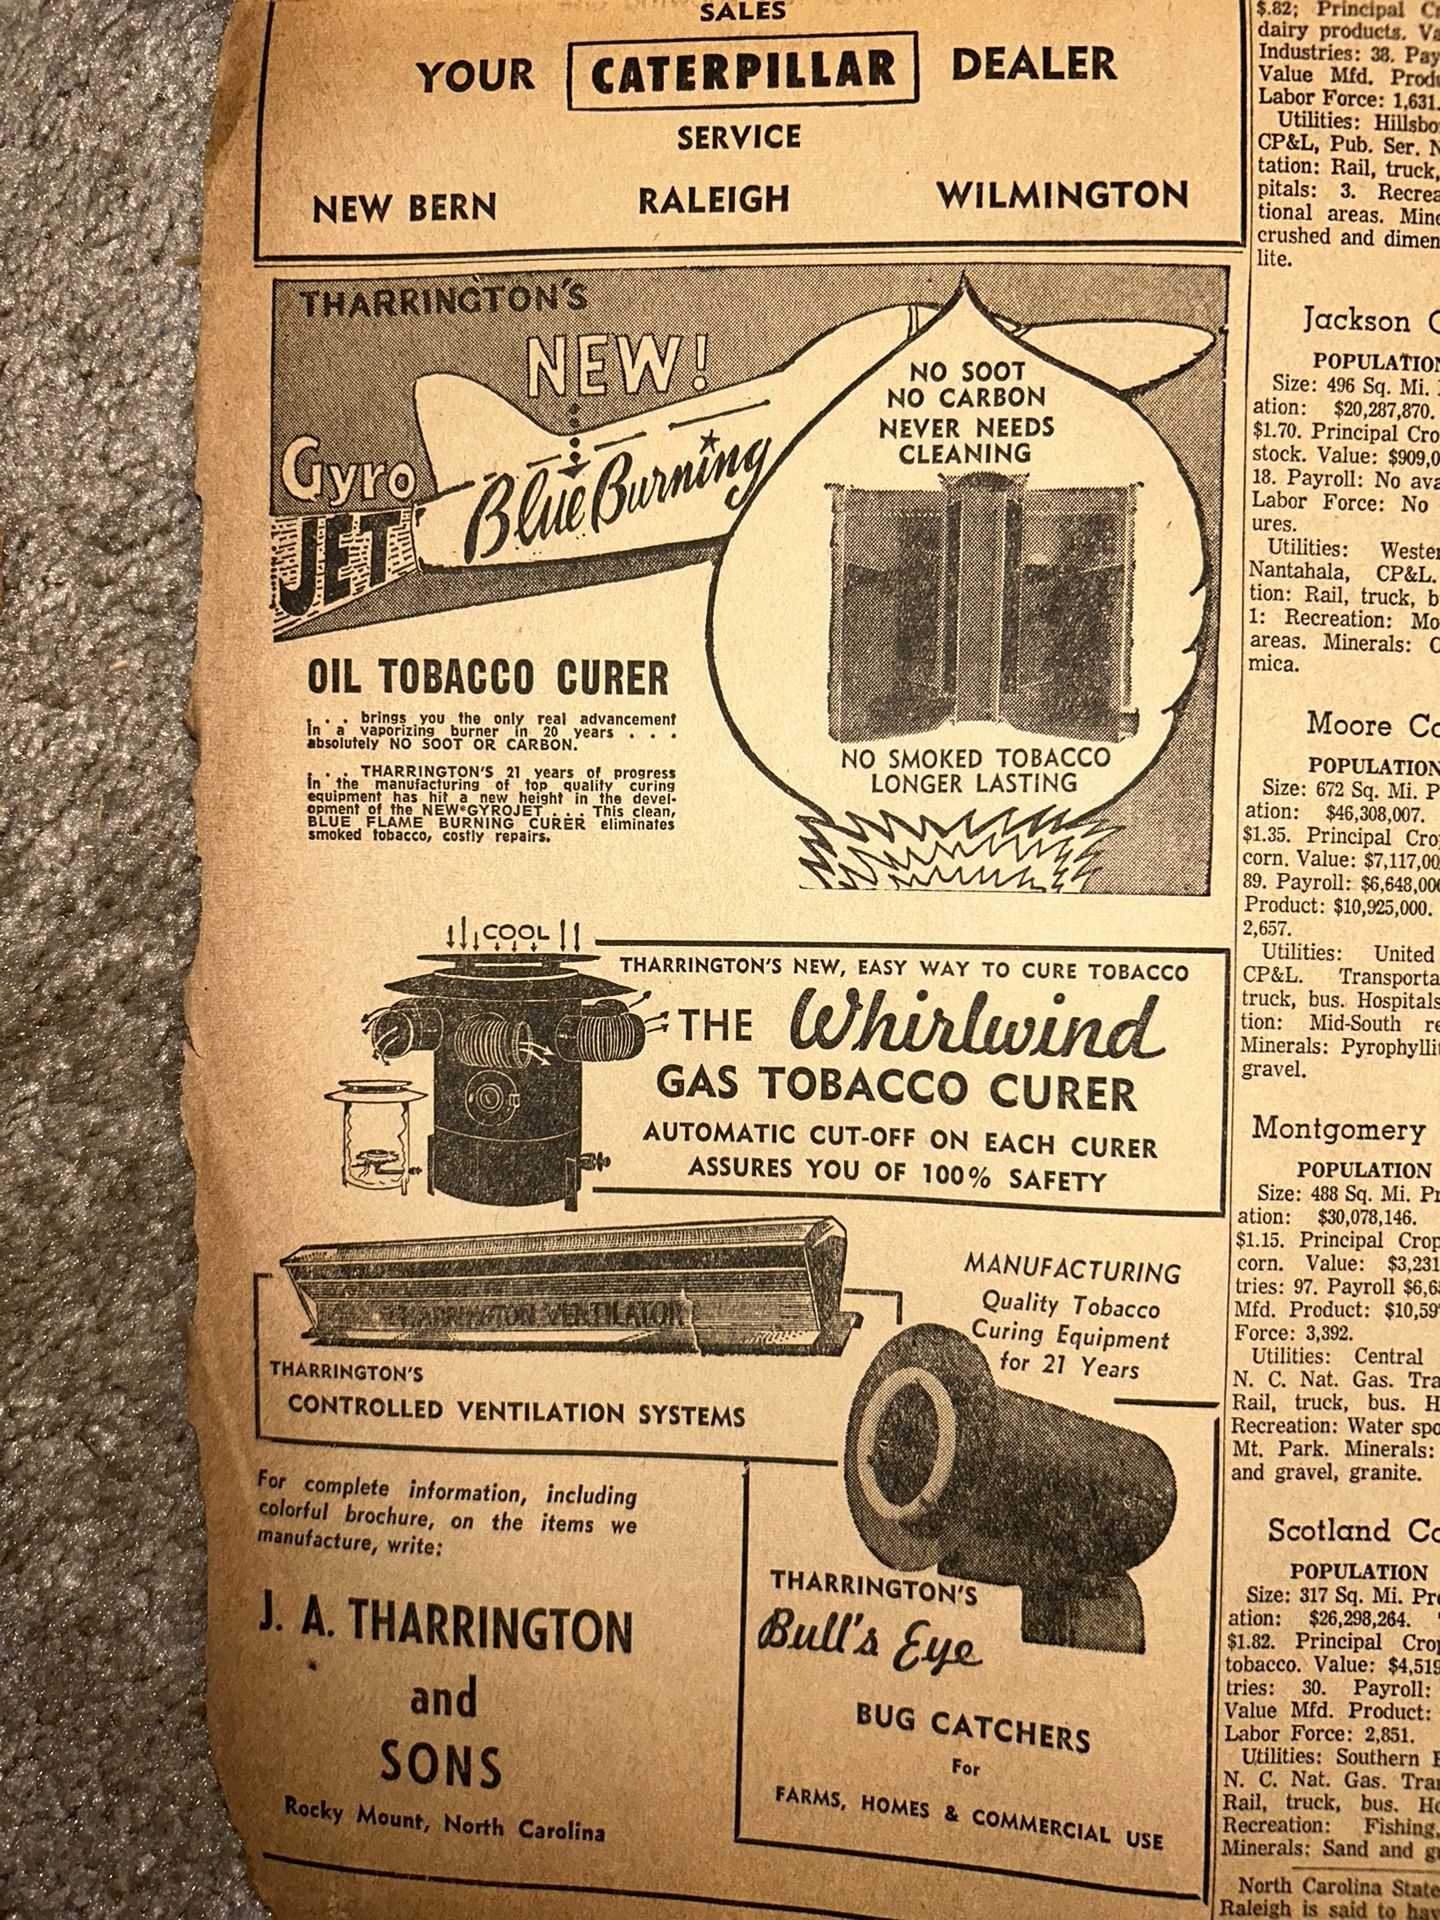 Newspaper (1959)